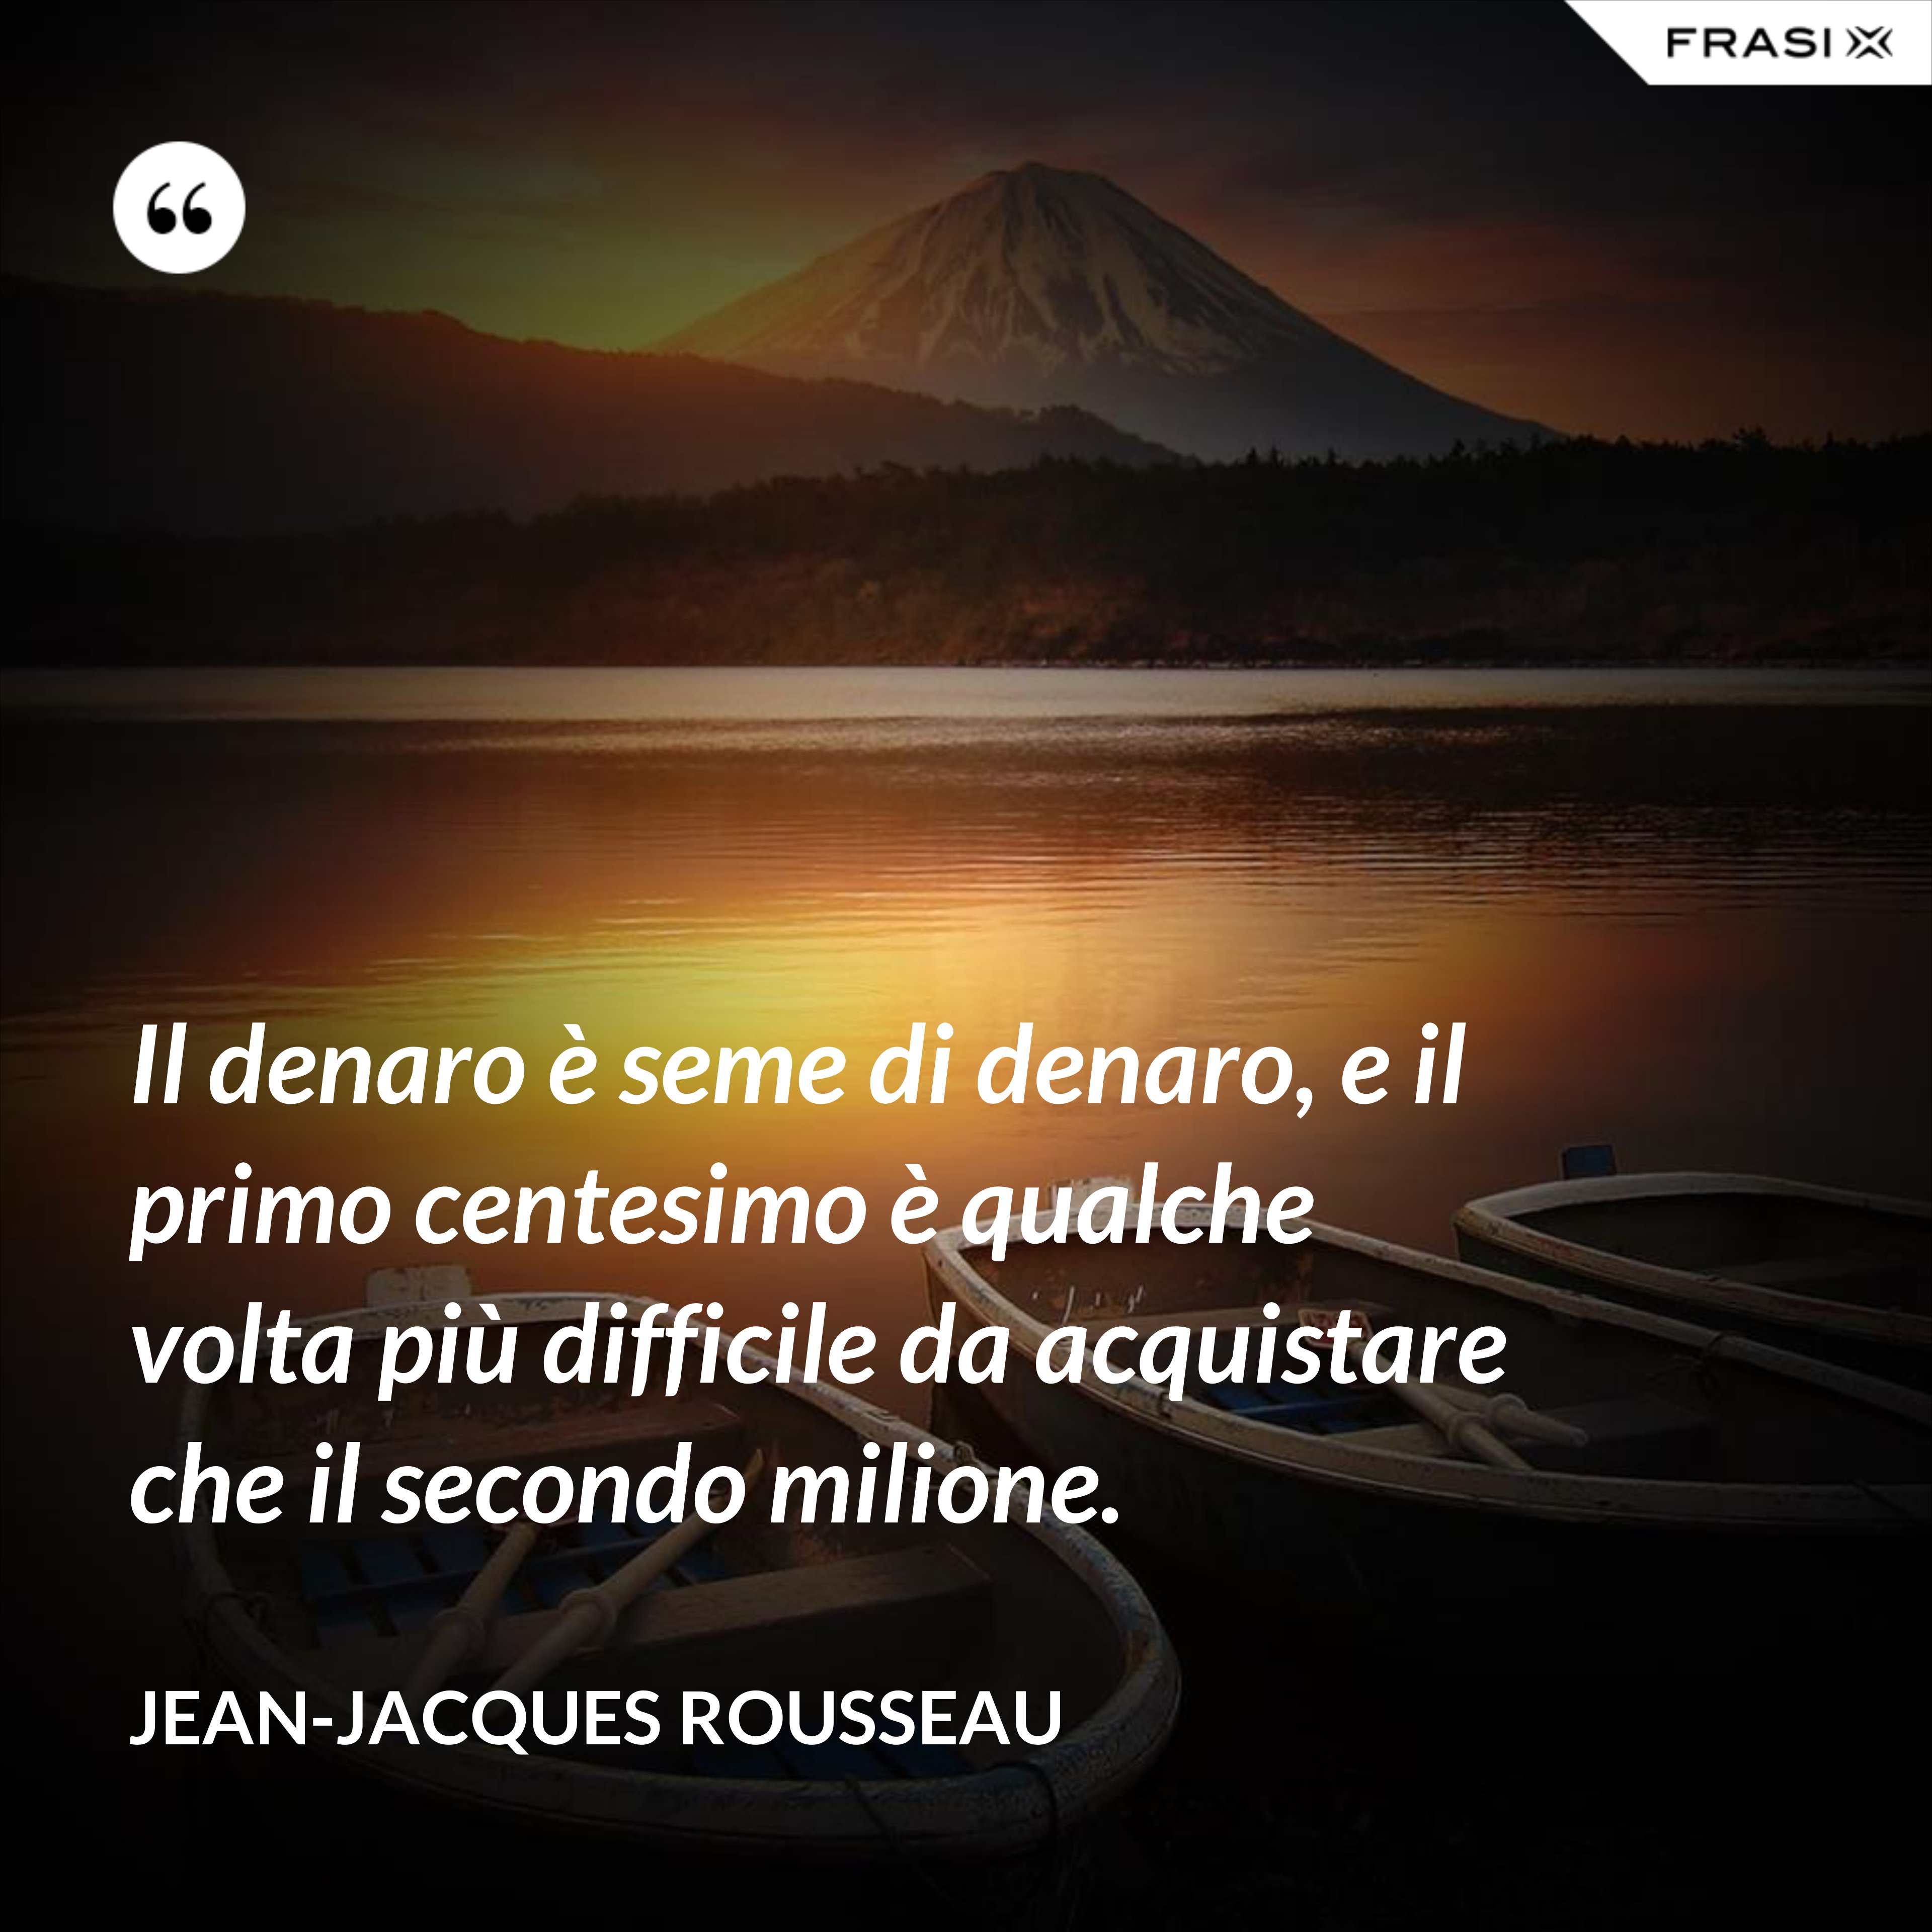 Il denaro è seme di denaro, e il primo centesimo è qualche volta più difficile da acquistare che il secondo milione. - Jean-Jacques Rousseau